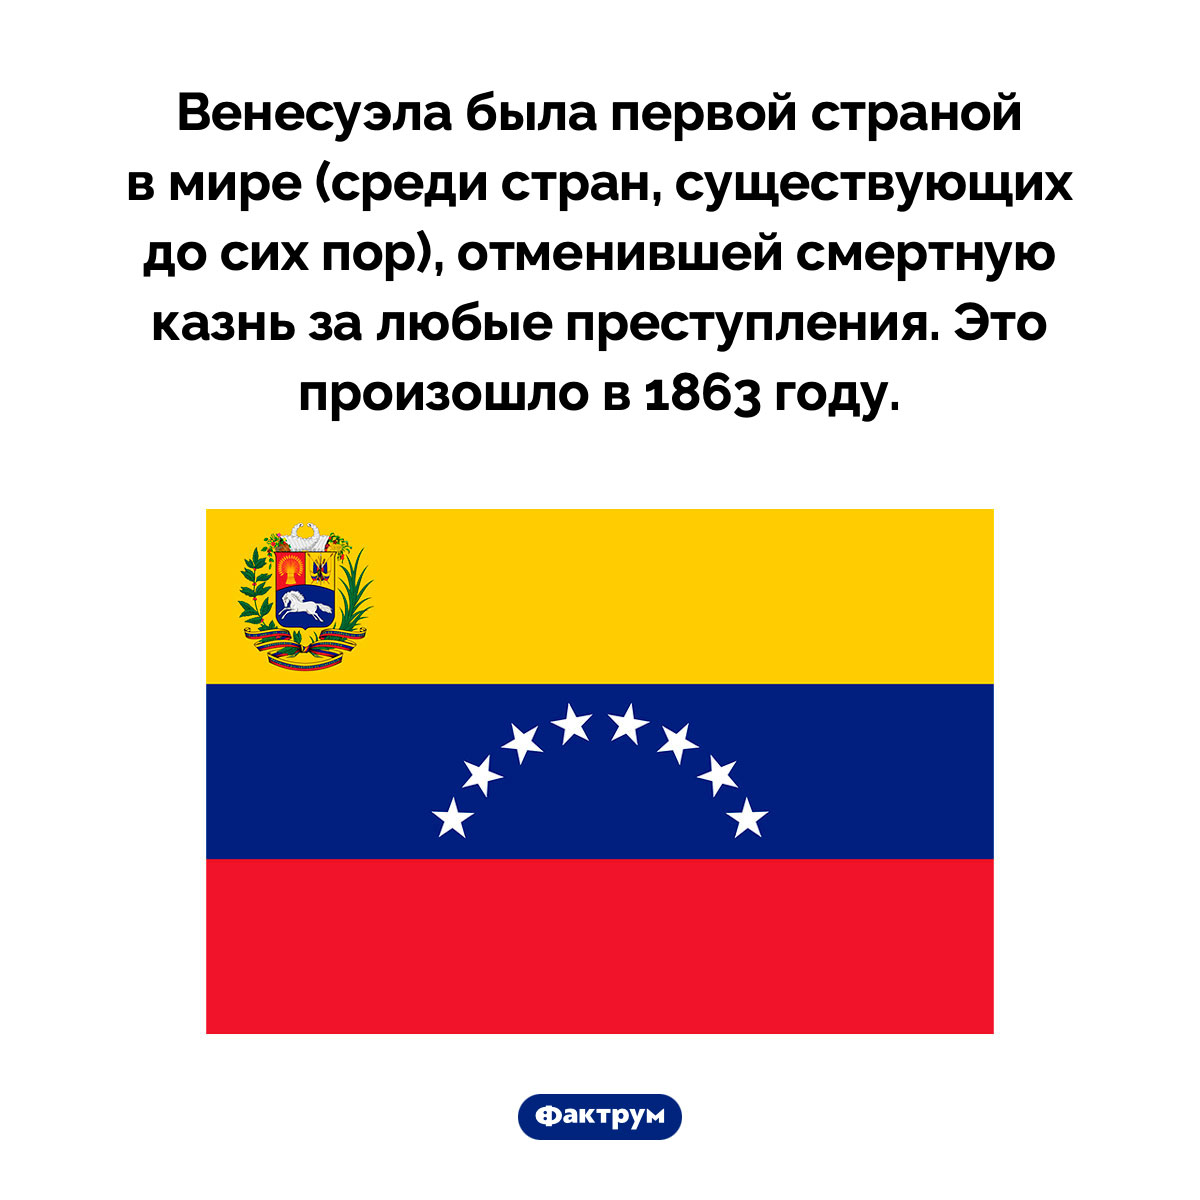 Когда Венесуэла отменила смертную казнь. Венесуэла была первой страной в мире (среди стран, существующих до сих пор), отменившей смертную казнь за любые преступления. Это произошло в 1863 году.